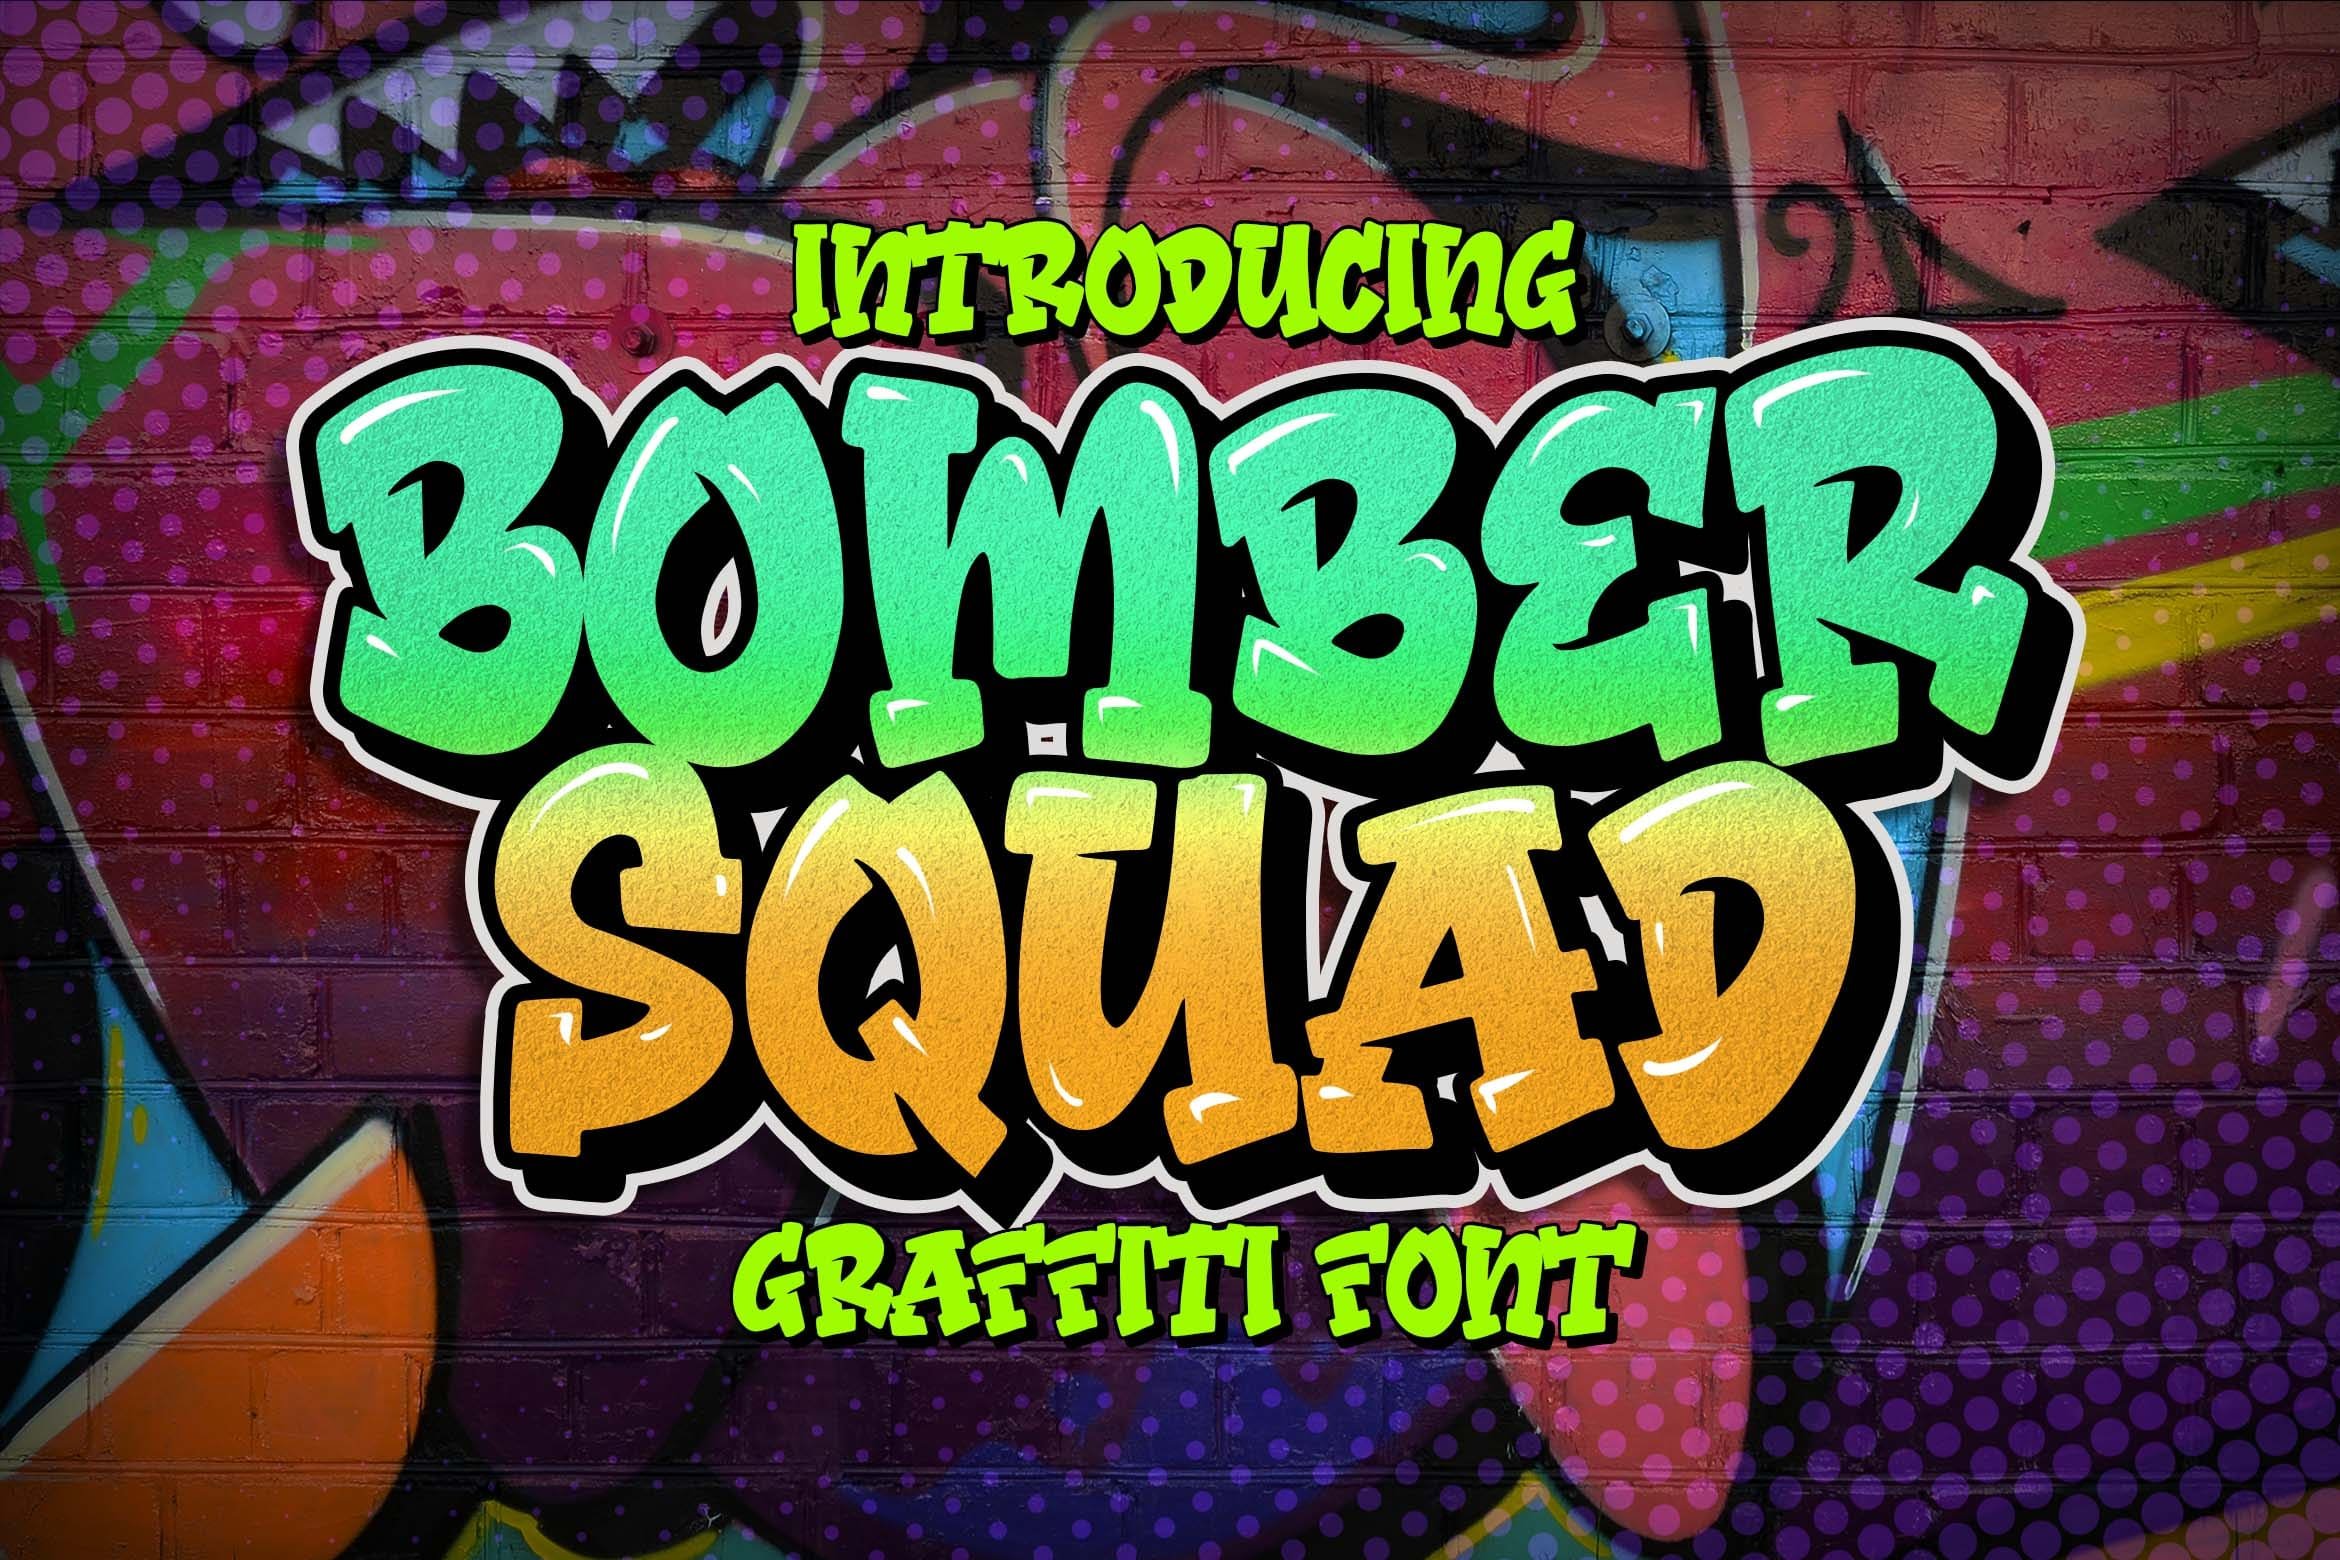 Bomber Squad Graffiti Font cover image.